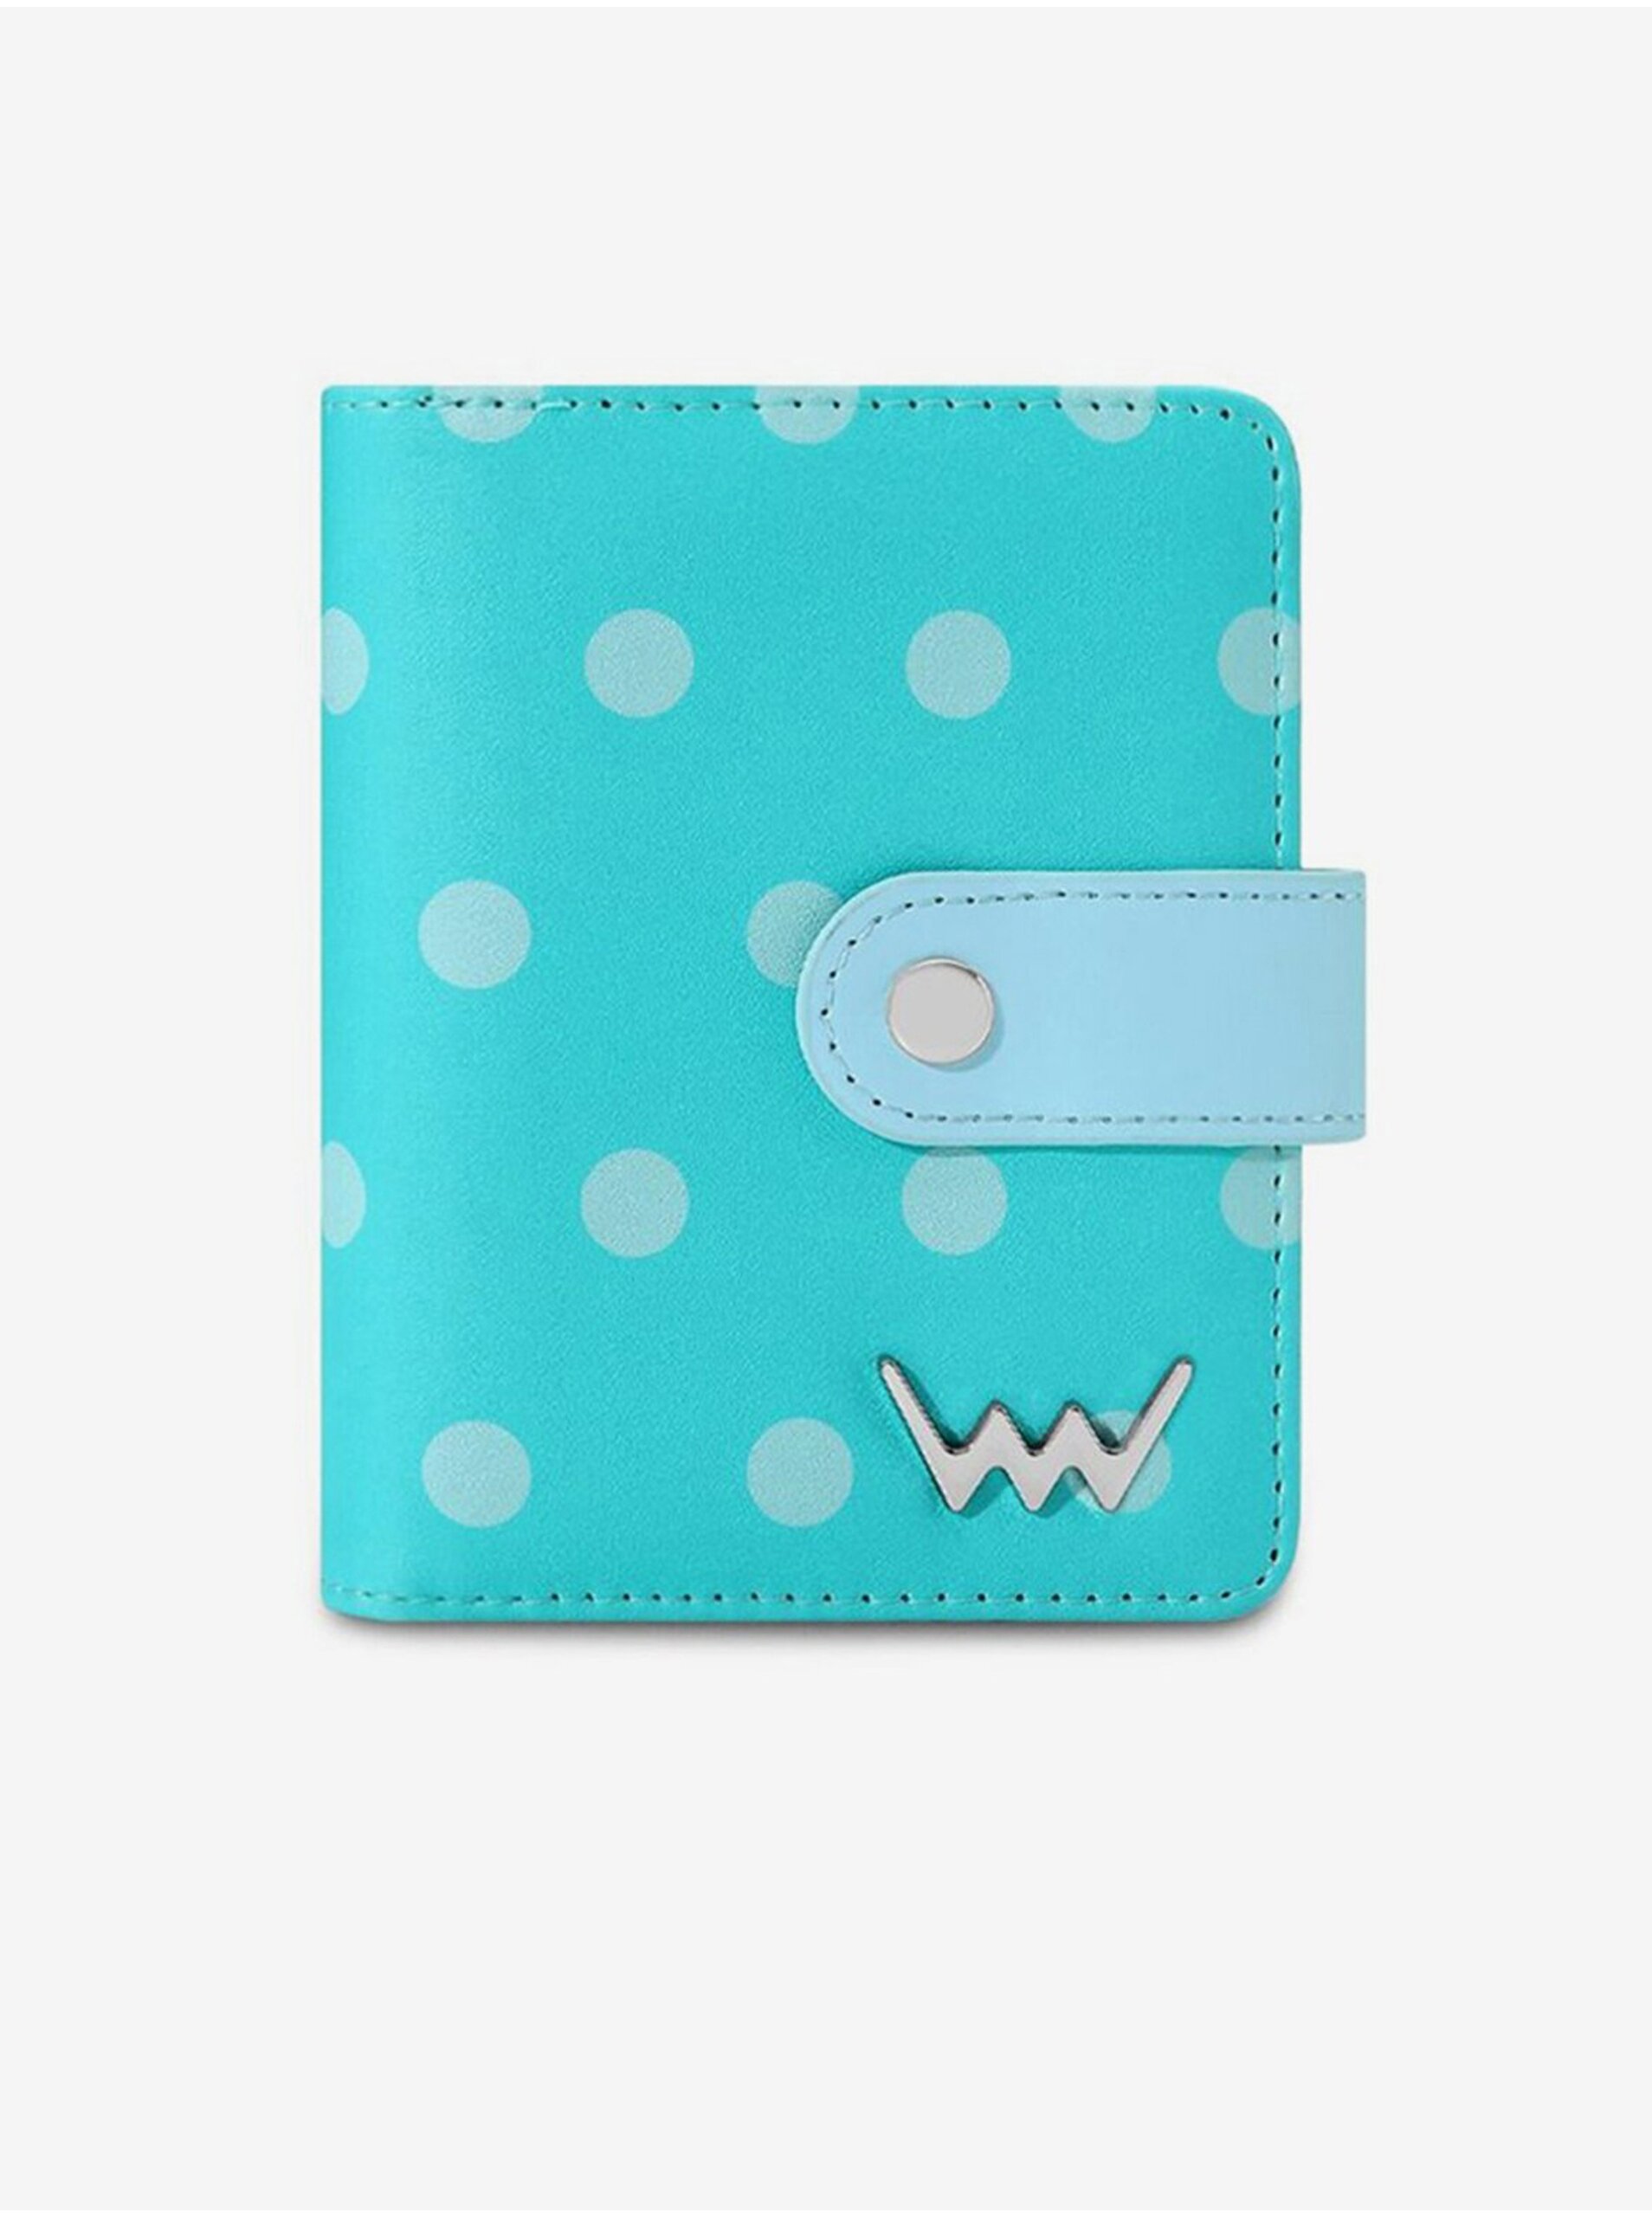 E-shop Tyrkysová dámská puntíkovaná peněženka VUCH Letty Turquoise